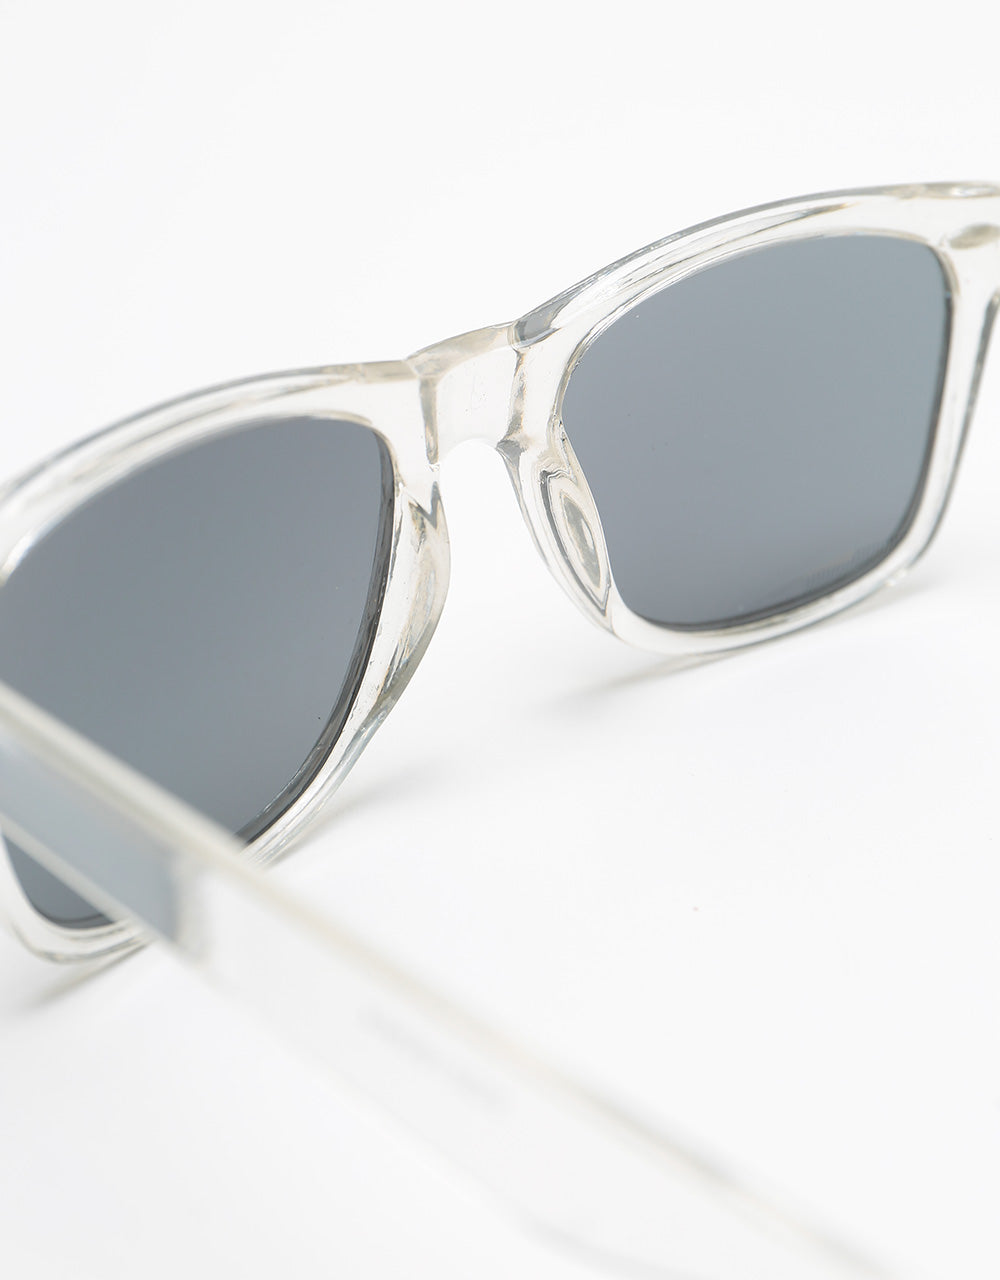 Reading Glasses 'Kit' Transparent/Tortoiseshell - Goodlookers